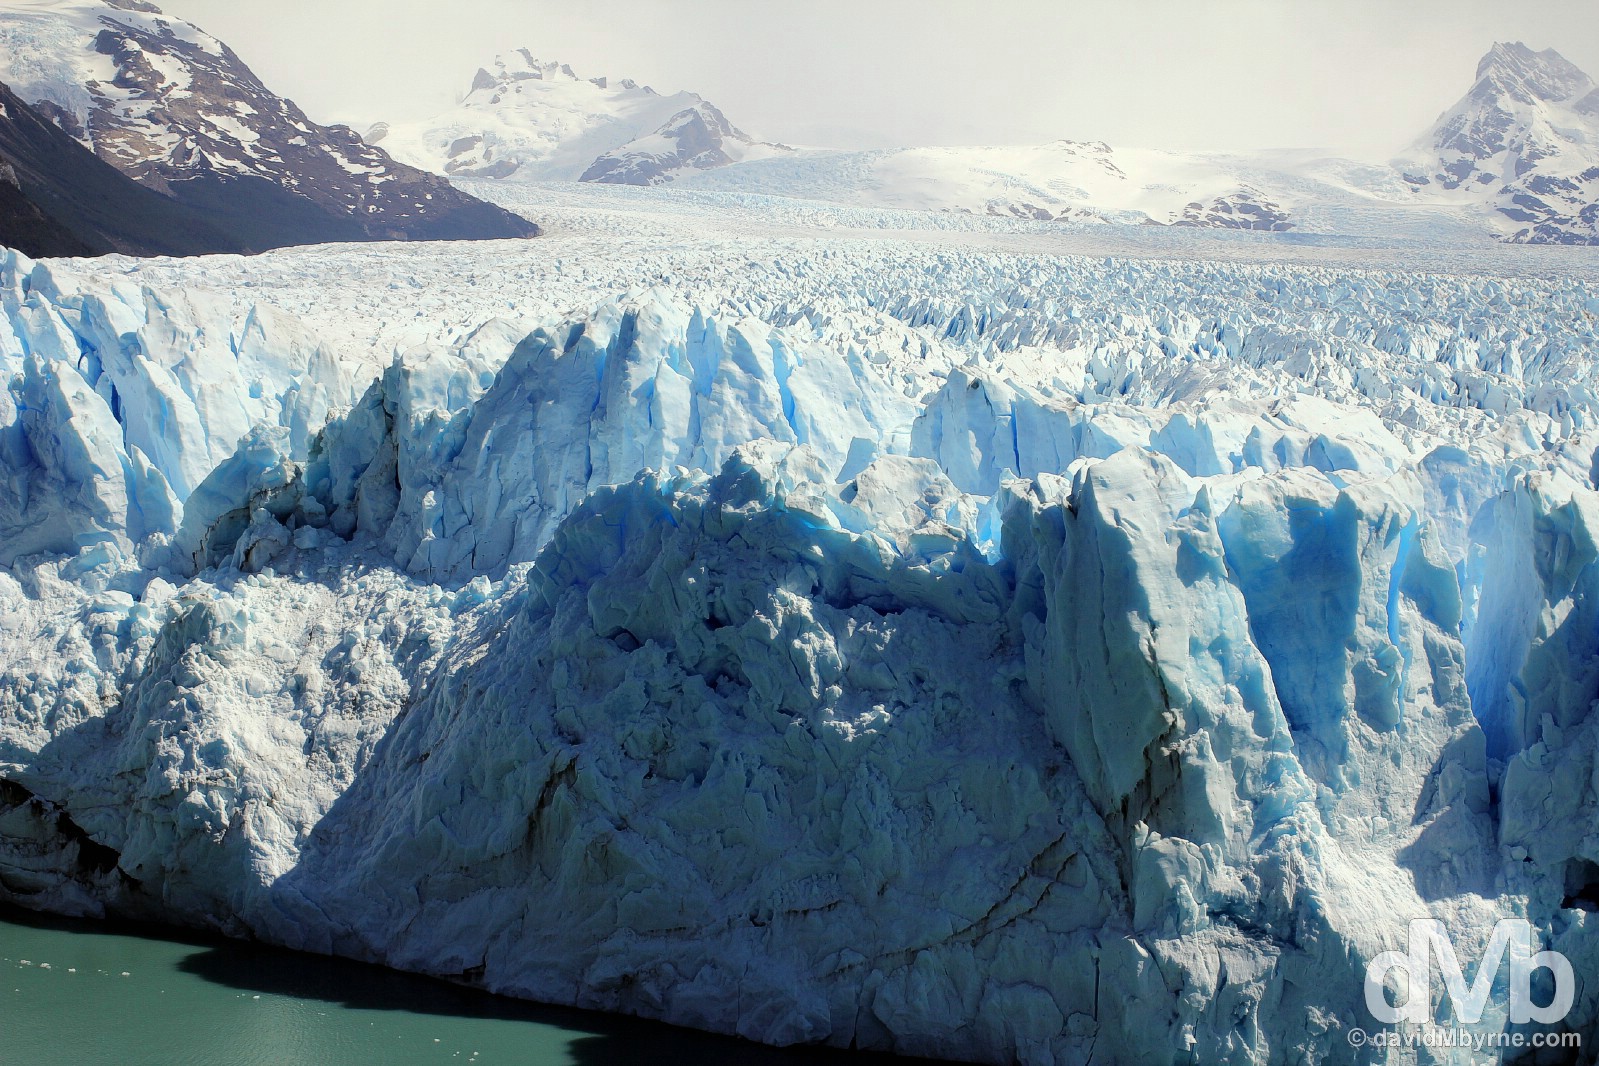 A section of the Perito Moreno Glacier in Parque Nacional Los Glaciares, Patagonia, Argentina. November 2, 2015.